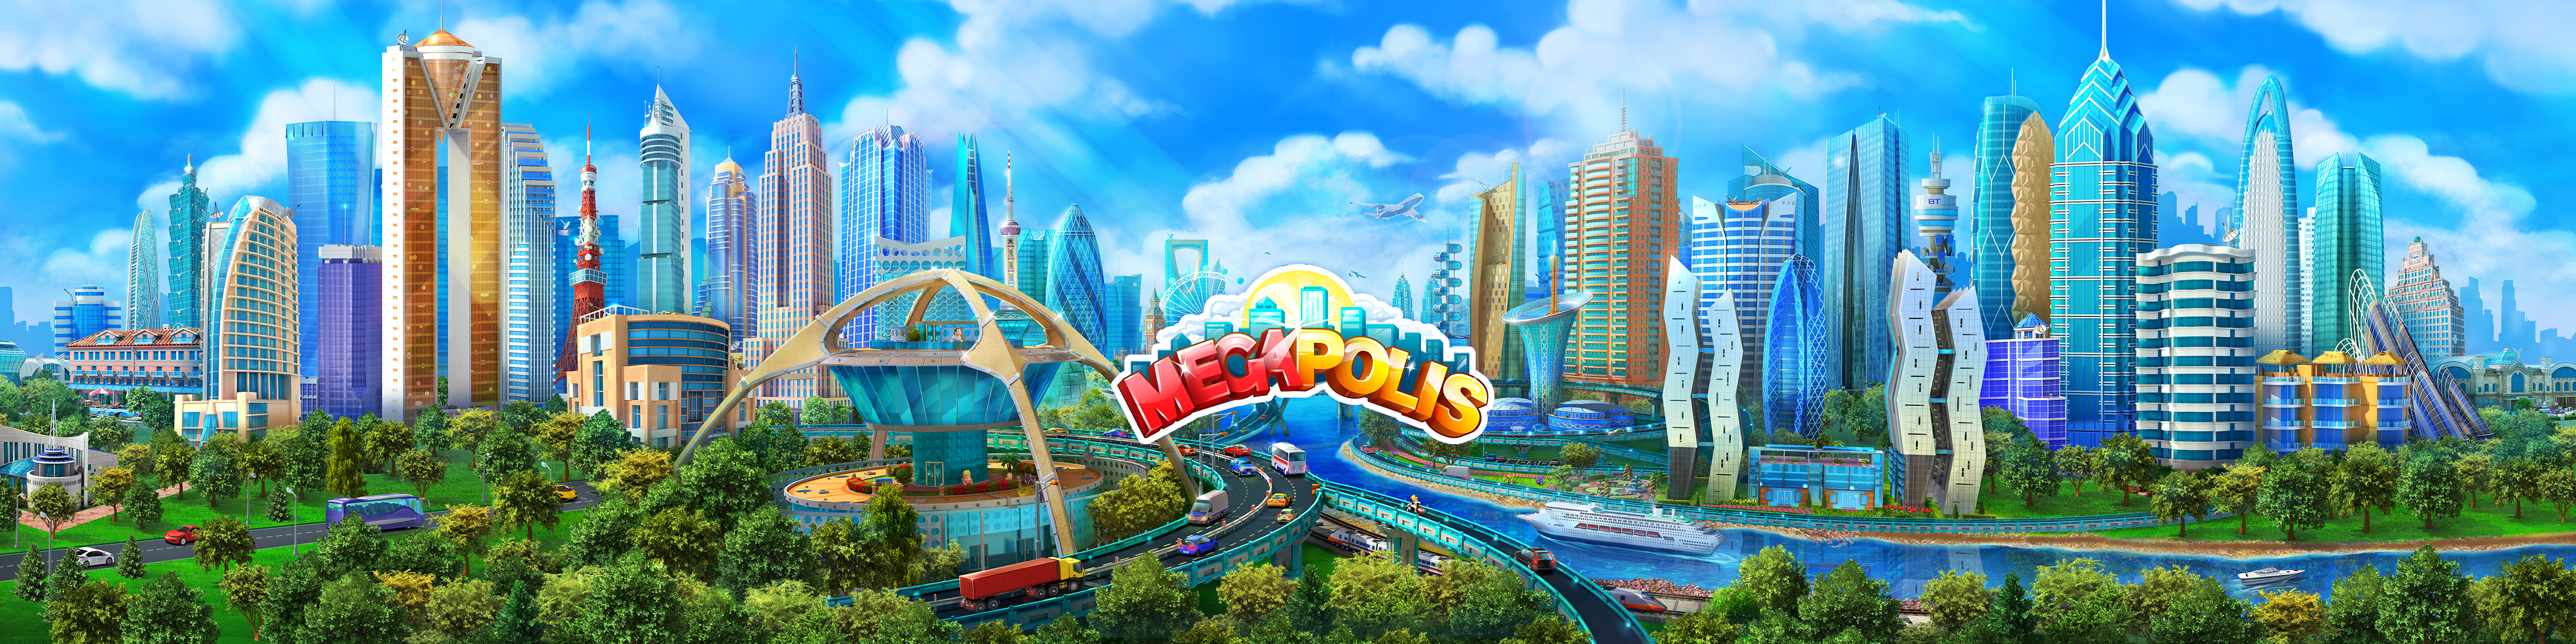 メガポリス Megapolis 街づくりゲーム Revenue Download Estimates Apple App Store Japan